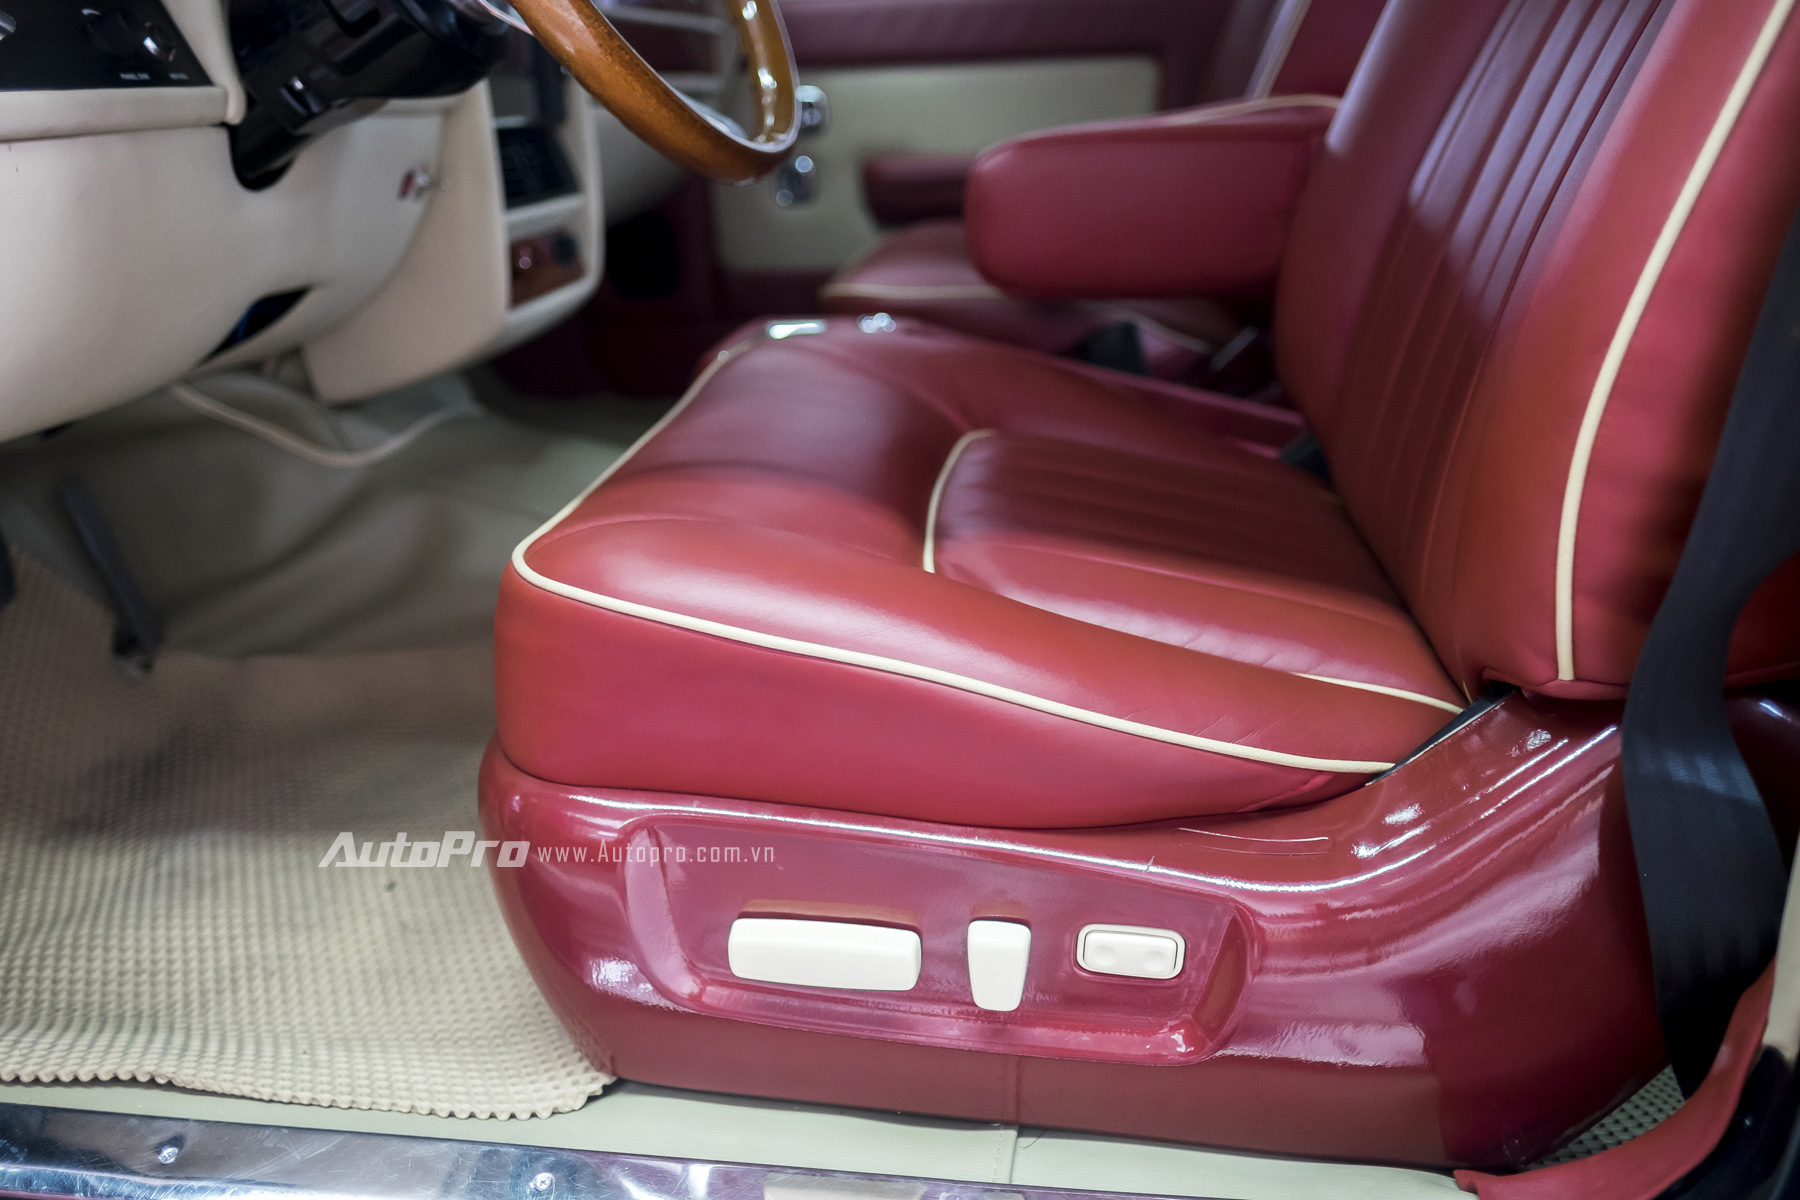 
Dù được sản xuất vào những năm 1982 nhưng Rolls-Royce Silver Spirit 1982 đã được trang bị ghế điều khiển điện ở cả ghế lái và ghế phụ.
